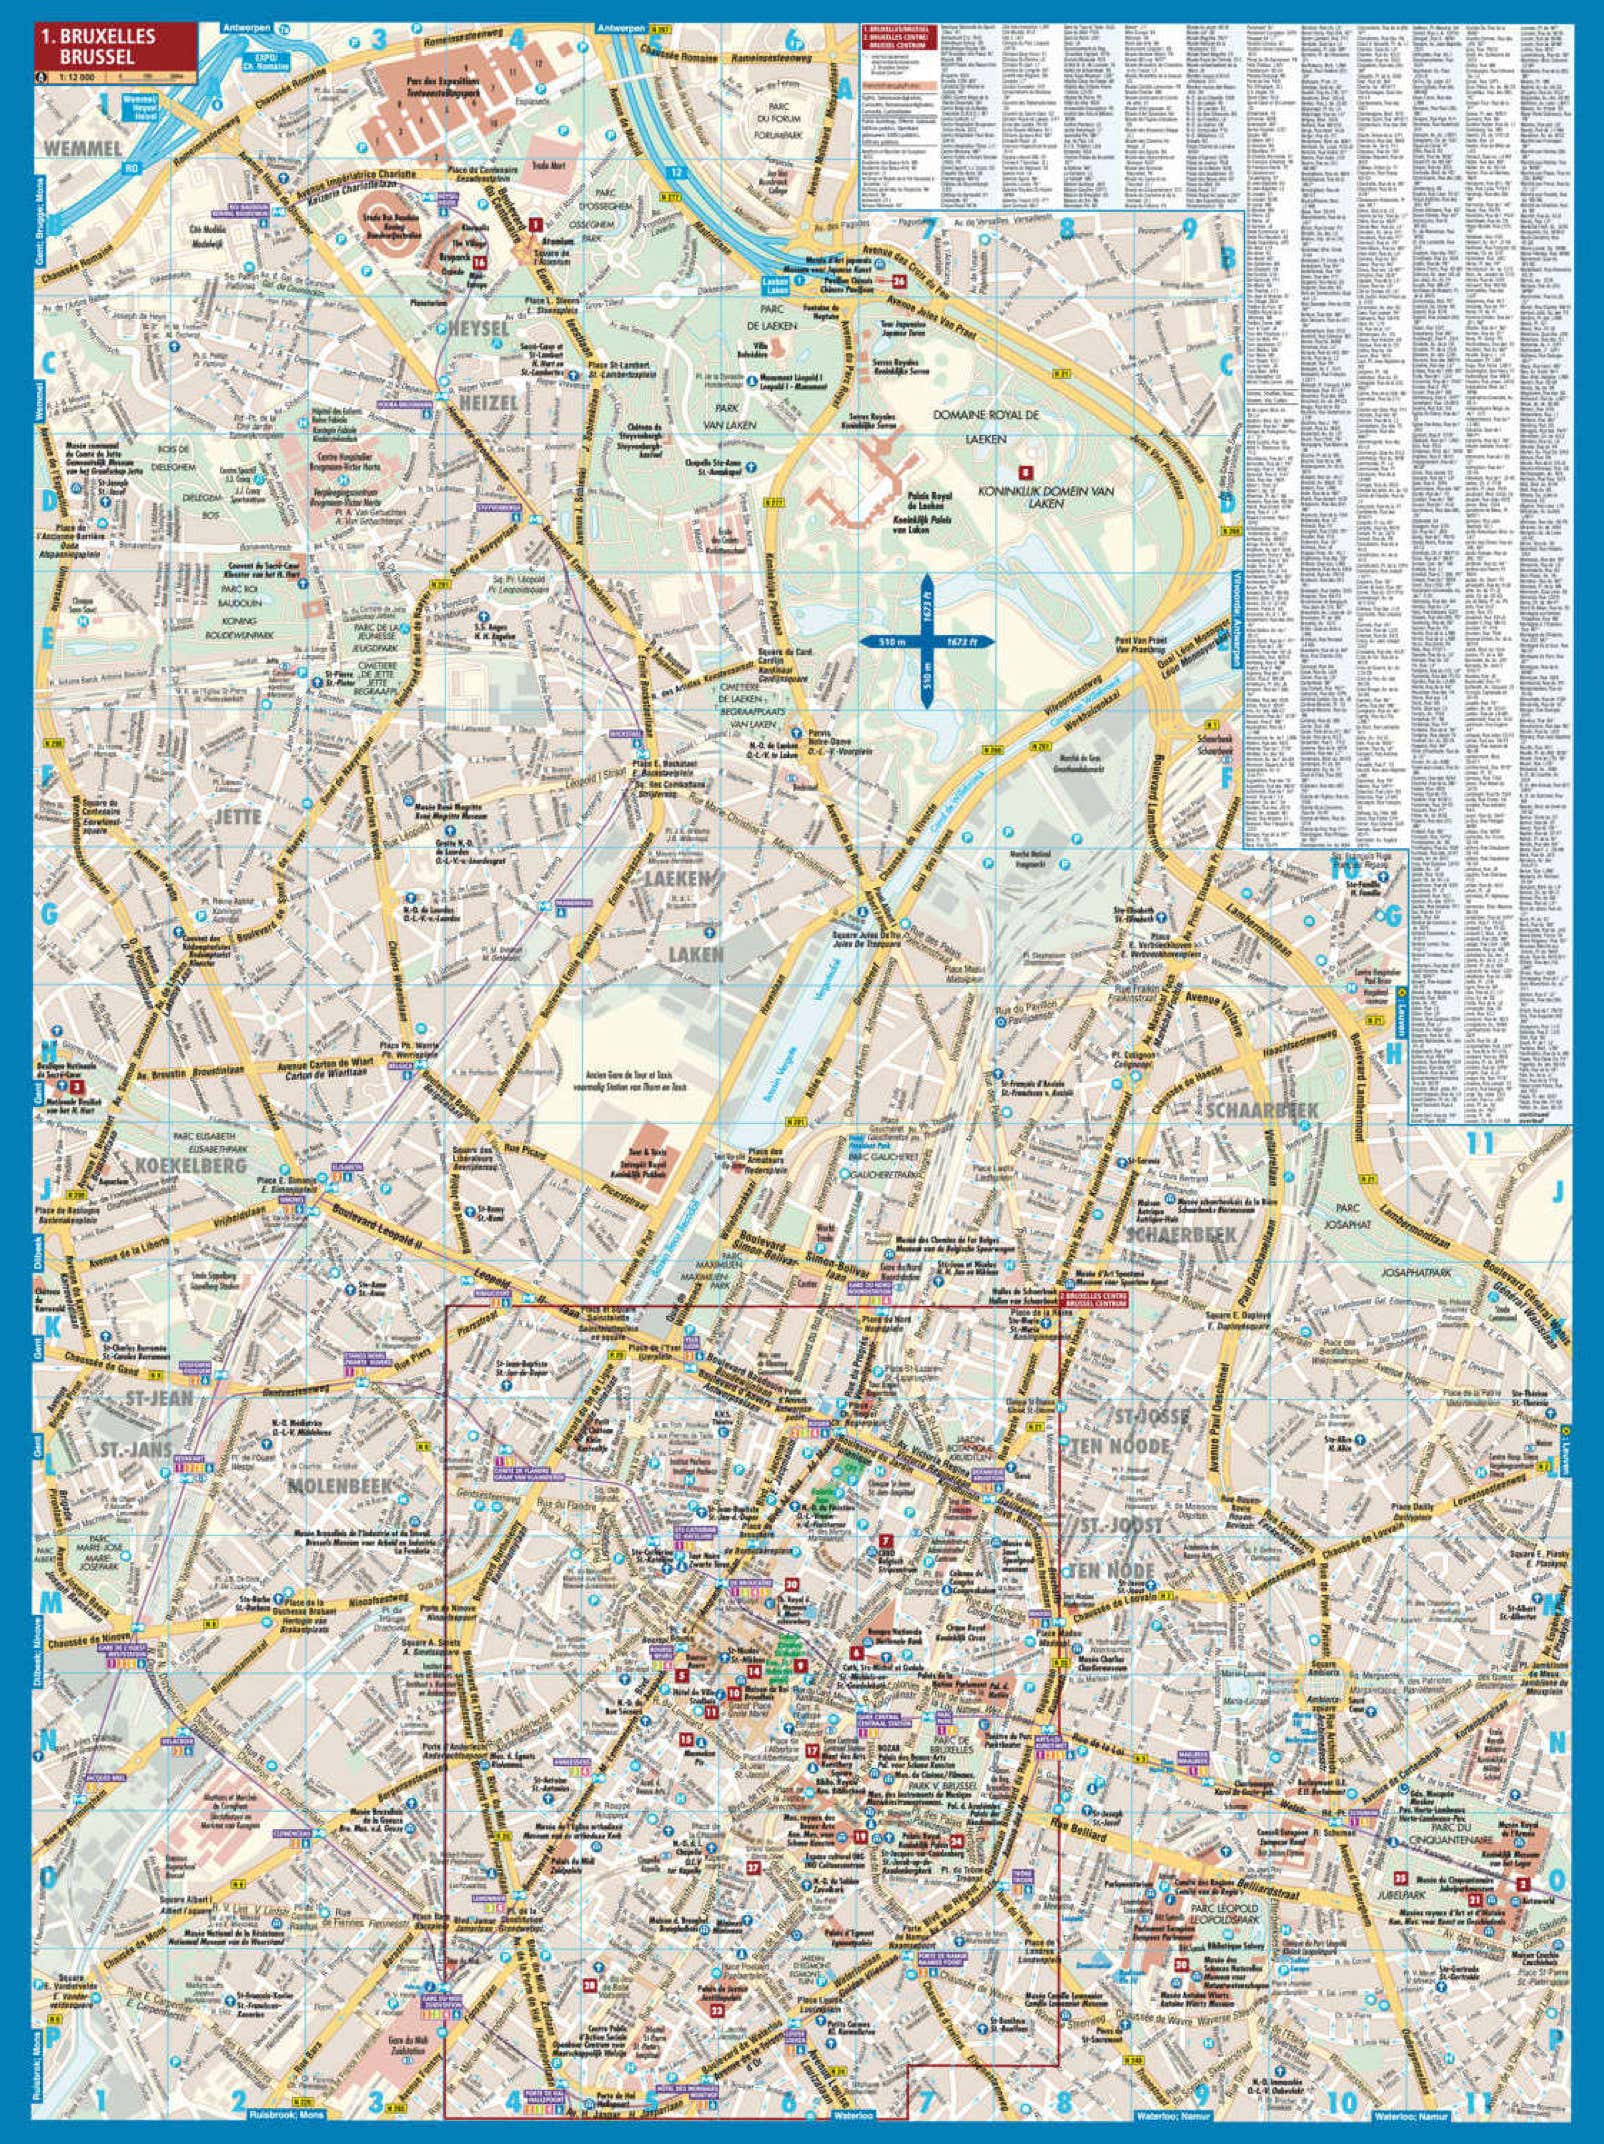 Bruessel Borch Map - Seite 2